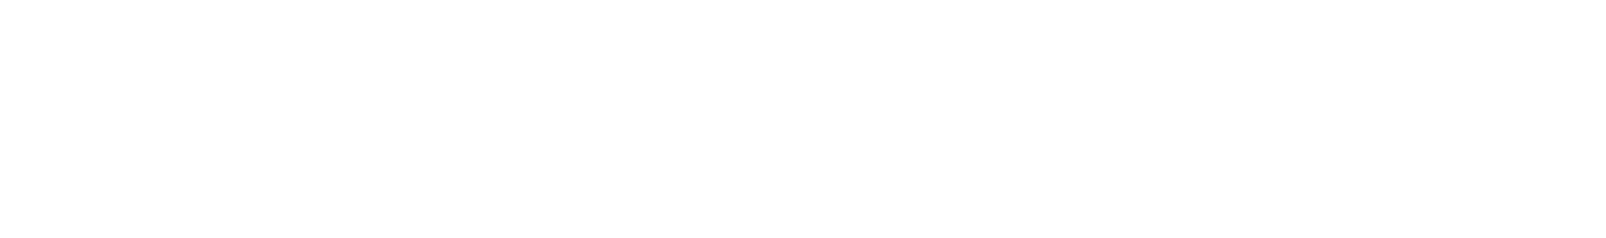 Enovix logo large for dark backgrounds (transparent PNG)